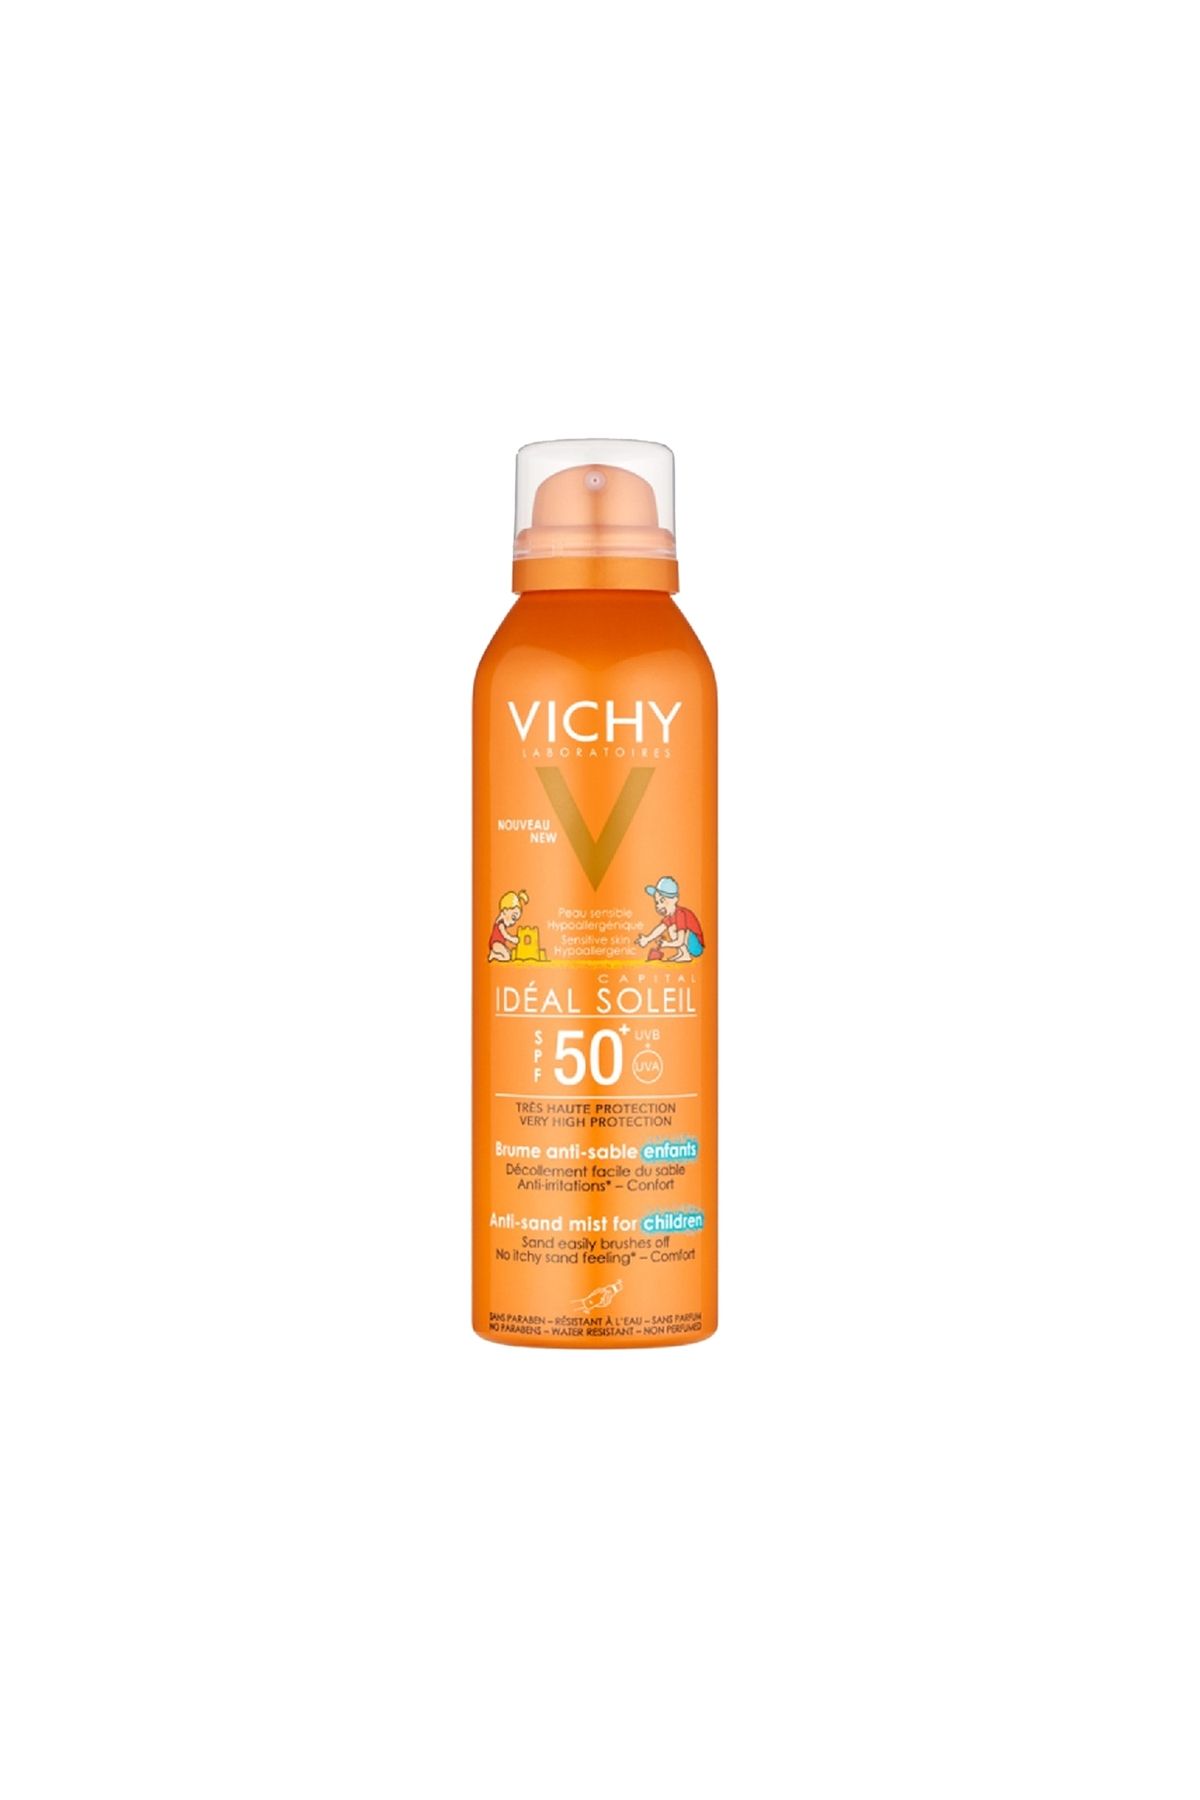 Vichy Çocuklar için kumun vücuda yapışmasına karşı etkili güneş koruyucu sprey / Spf 50 200 ml